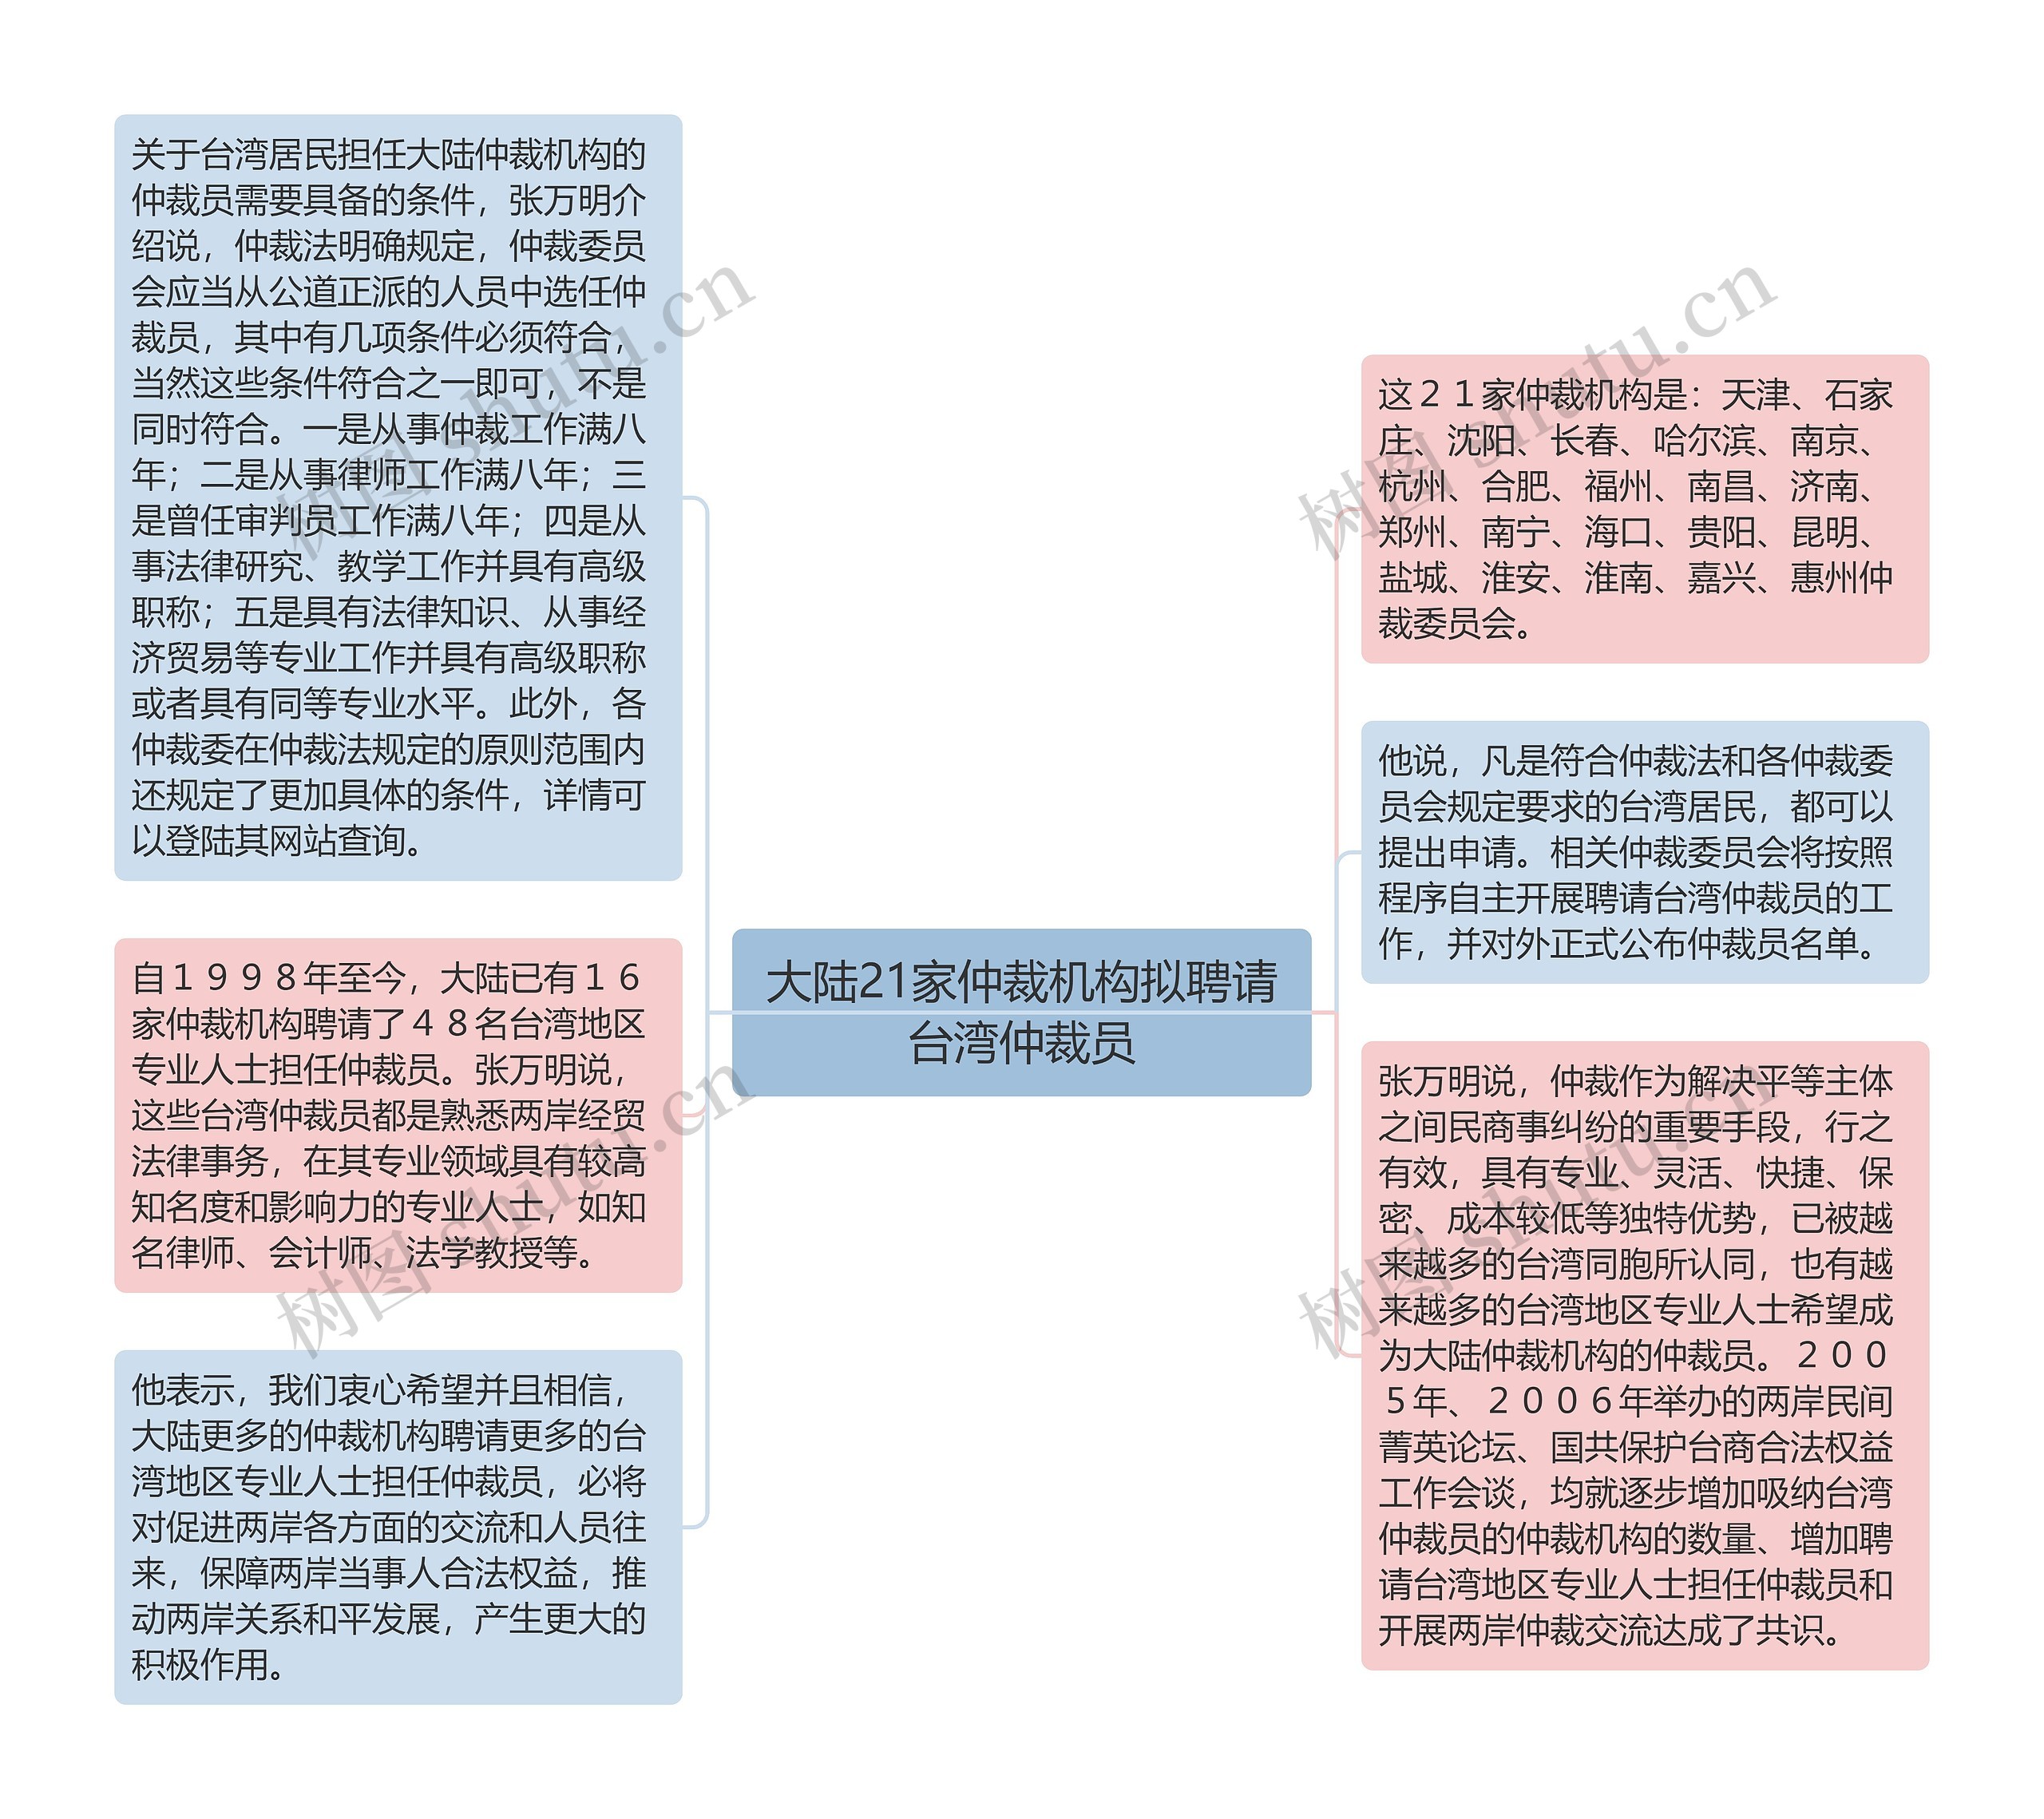 大陆21家仲裁机构拟聘请台湾仲裁员思维导图